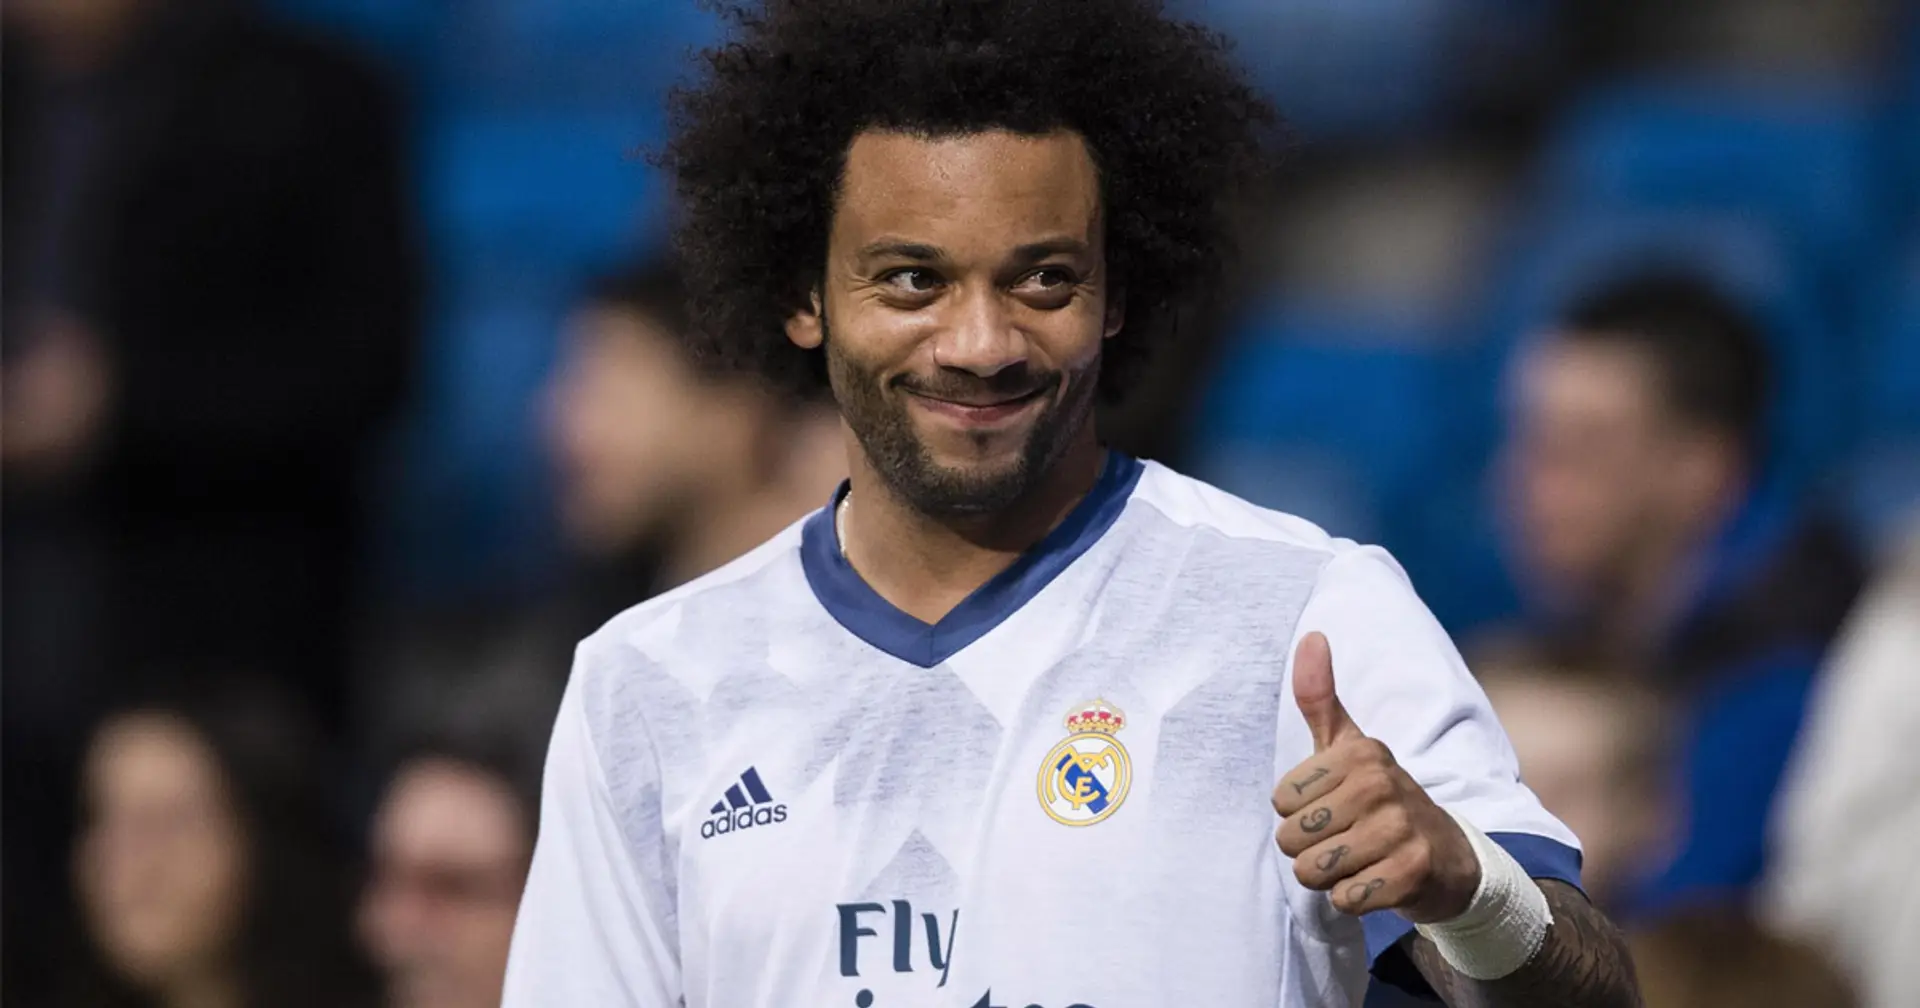 Marcelo quittera l'Europe cet été car il ne veut pas affronter le Real Madrid (fiabilité: 4 étoiles)